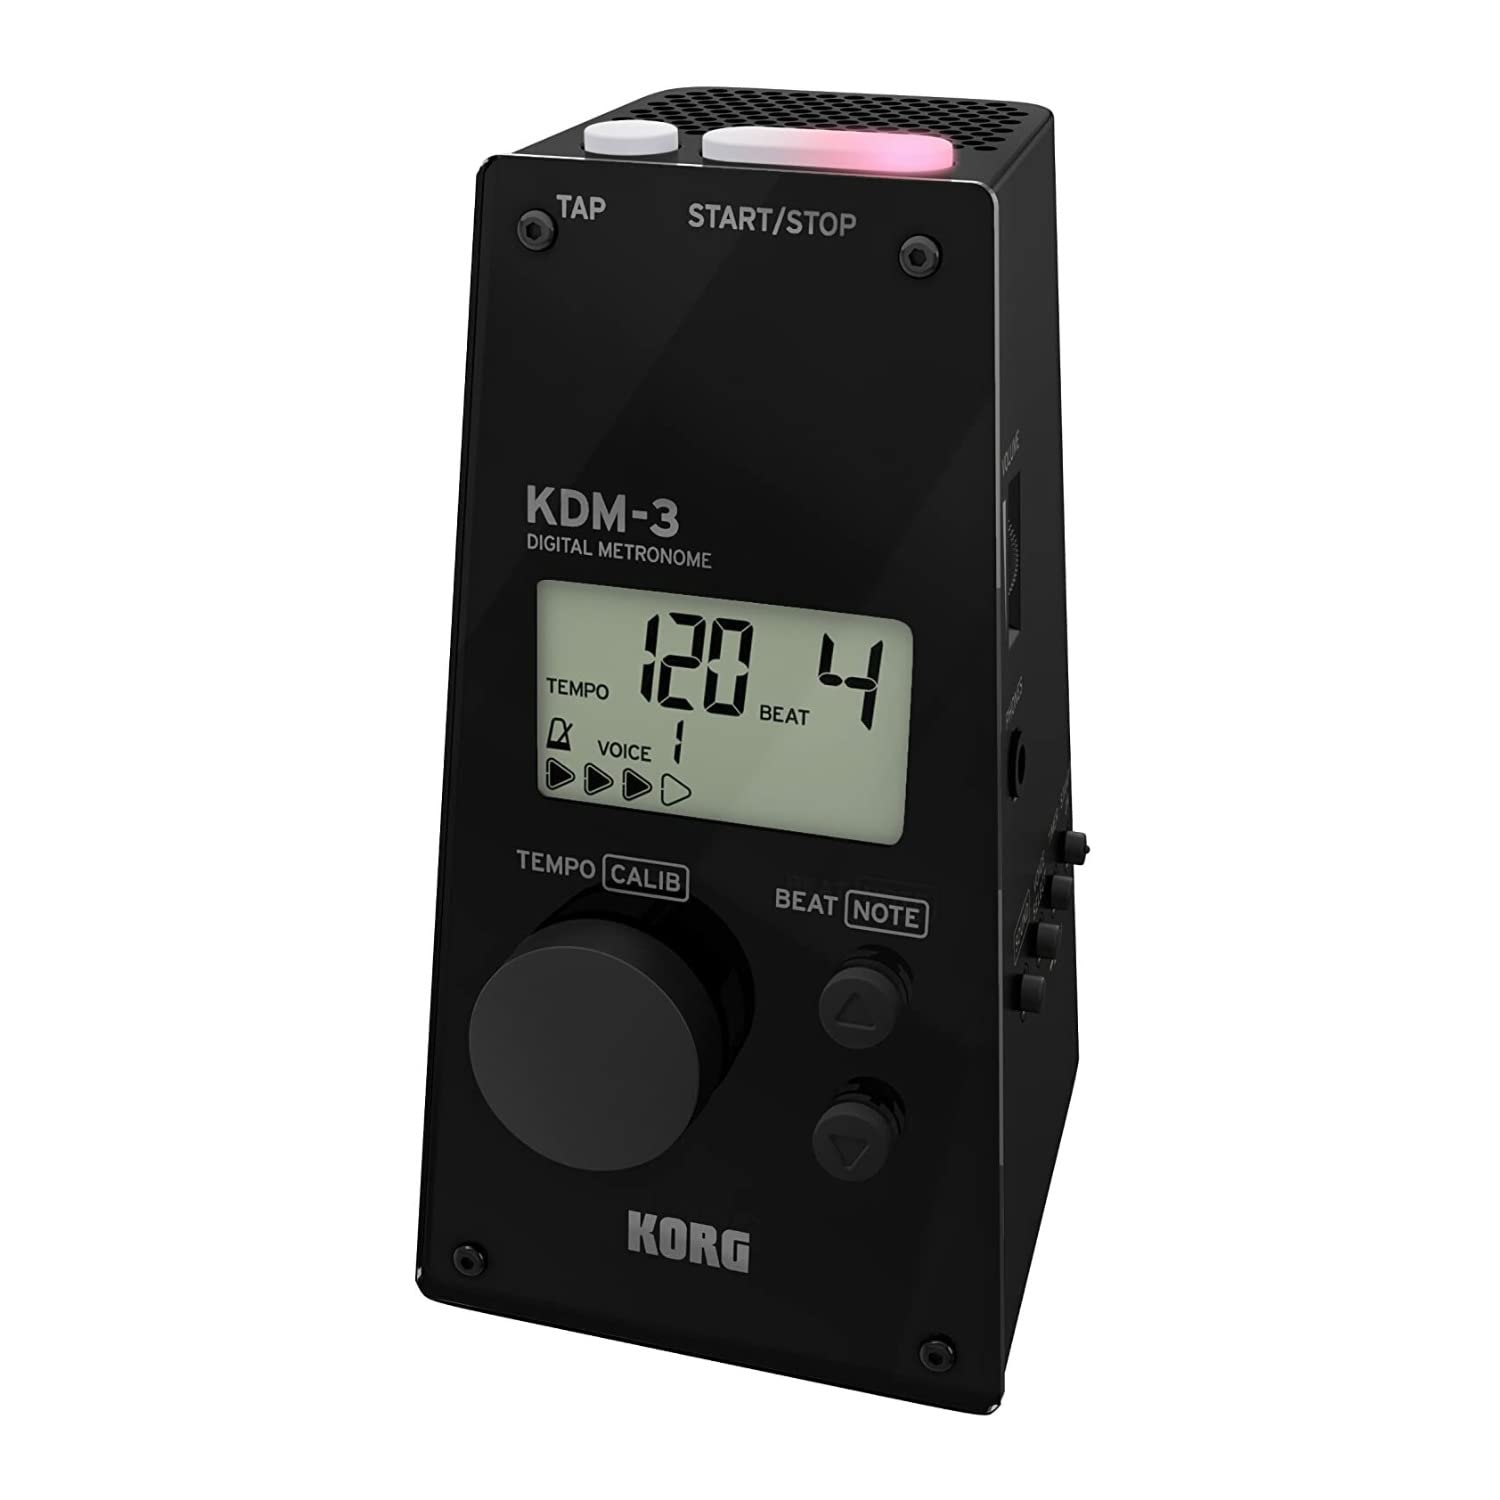 KORG Metronom KDM3, digitales Metronom in Pyramidenform, Metronom mit integrierter Sound- und Rhythmusauswahl, Sound-Out-Stimmgerät, schwarz